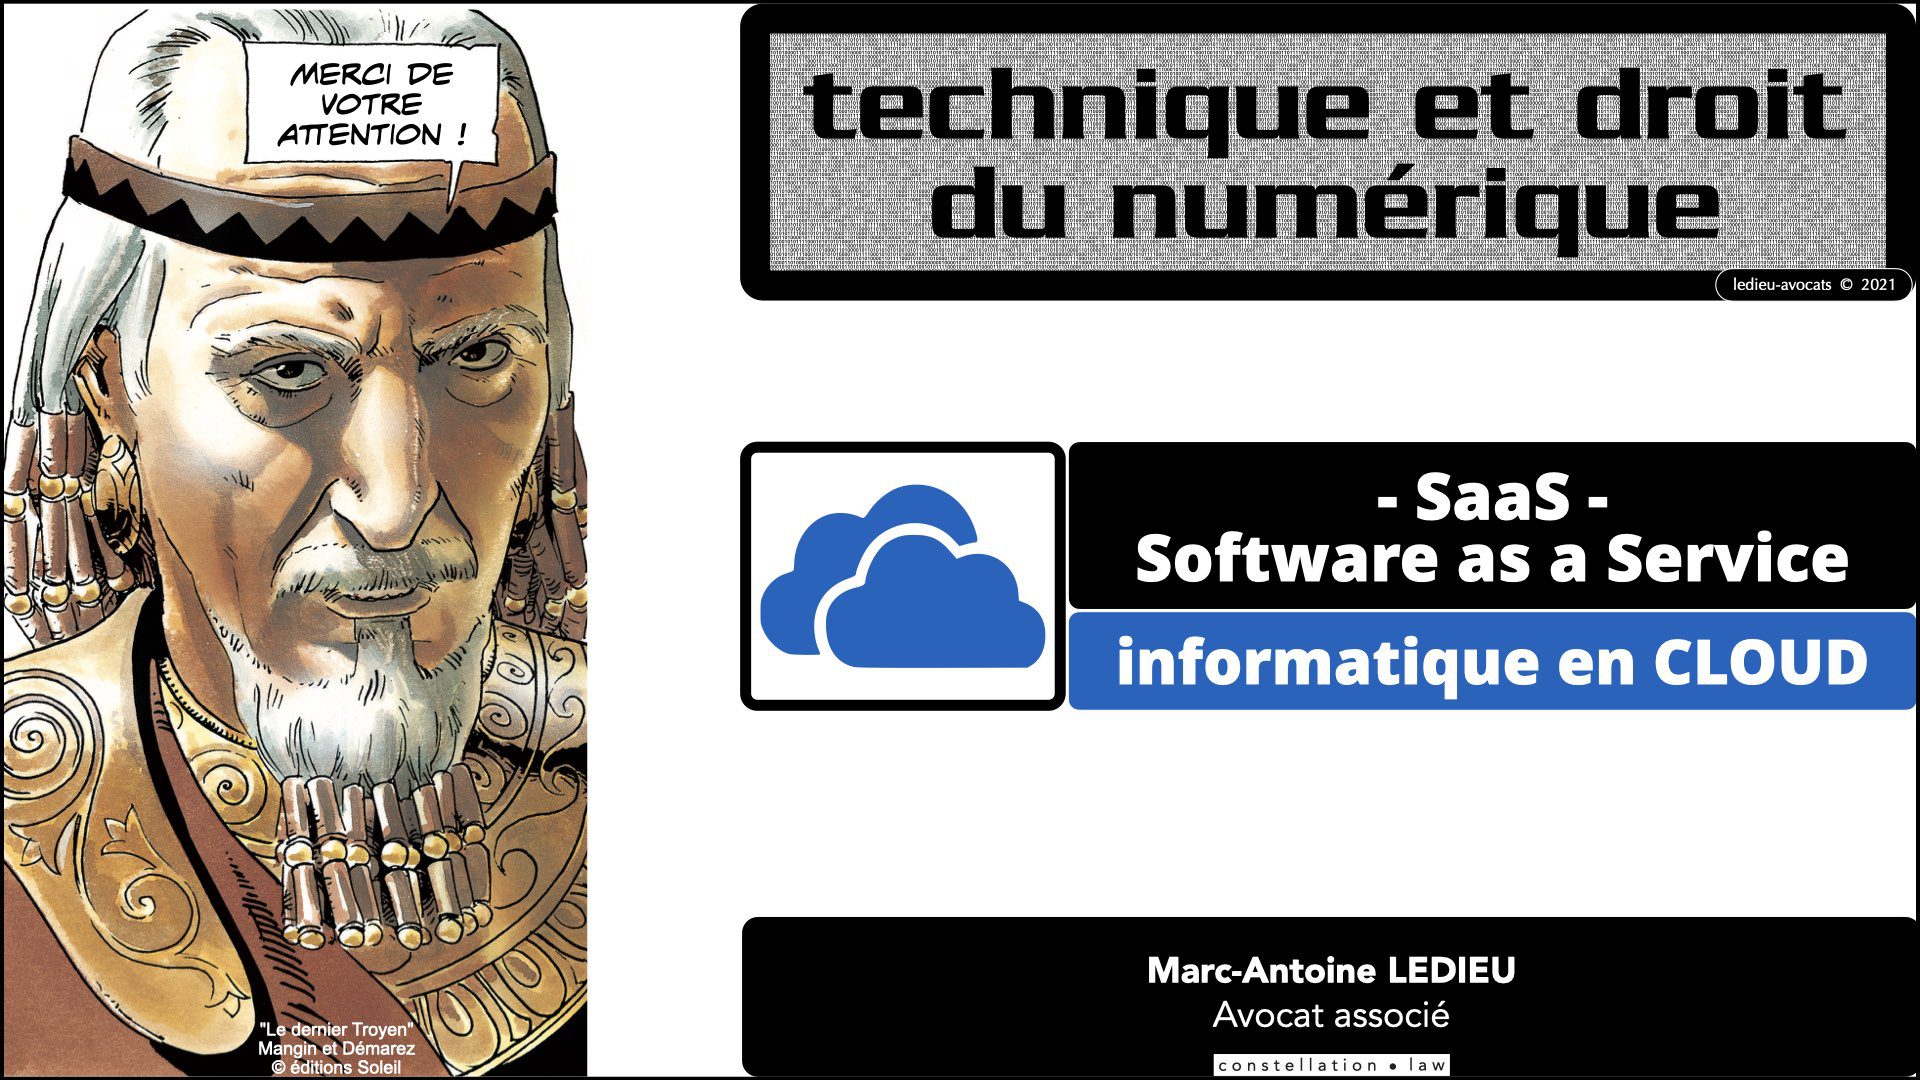 343 service LOGICIEL SaaS Software-as-a-Service cloud computing © Ledieu-Avocats technique droit numerique 30-08-2021.069